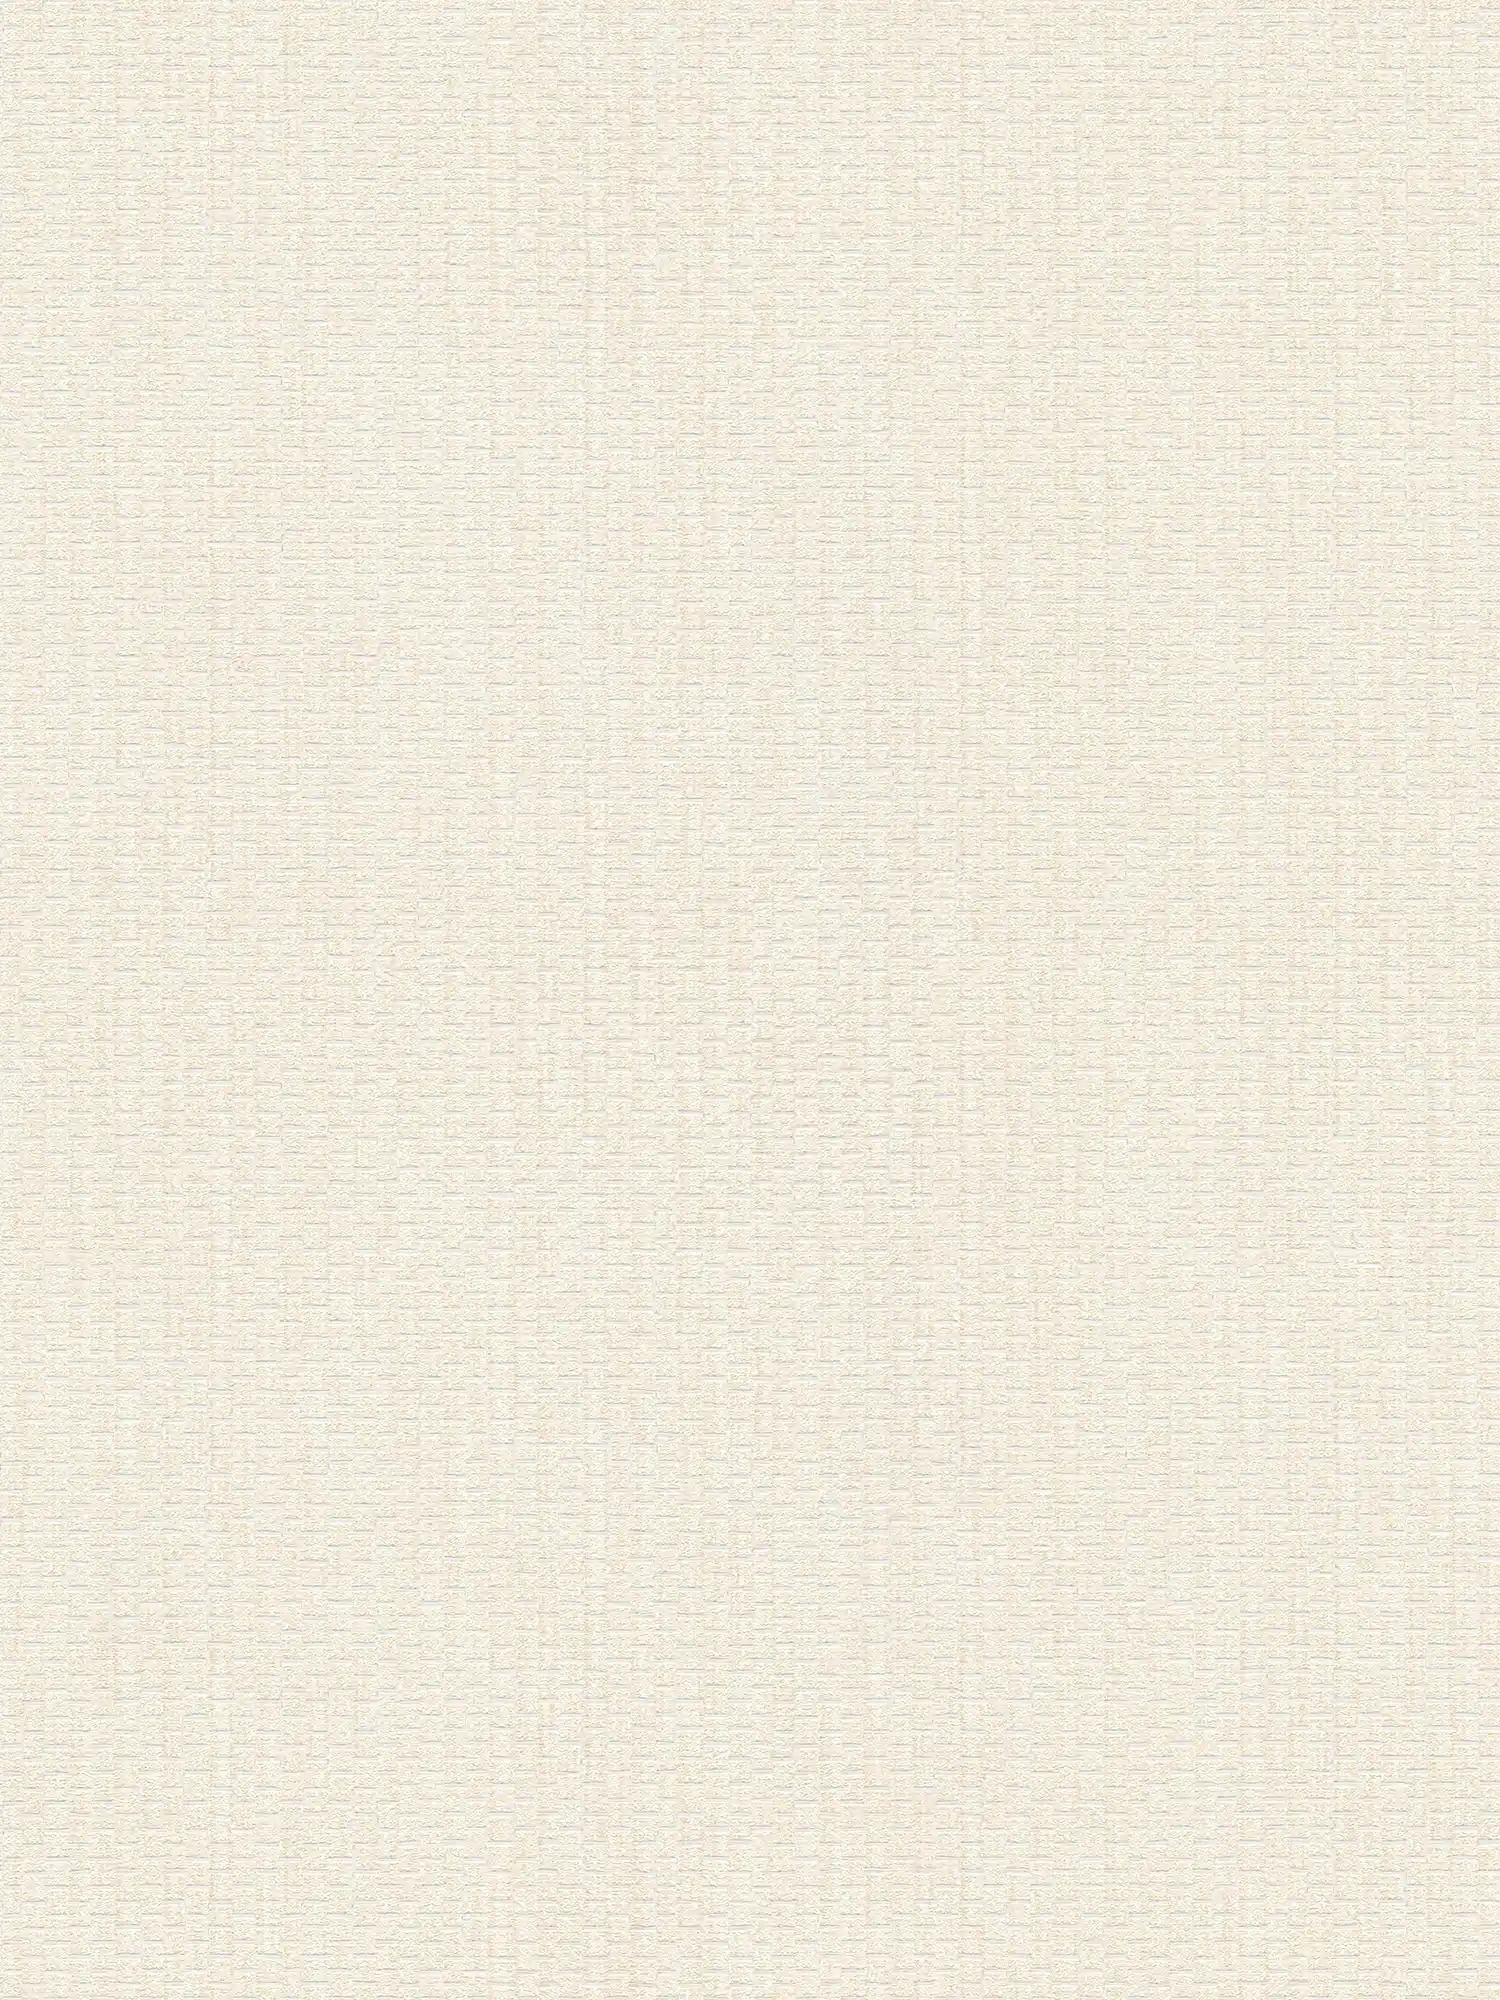 Wallpaper with raffia mats design - cream, white
